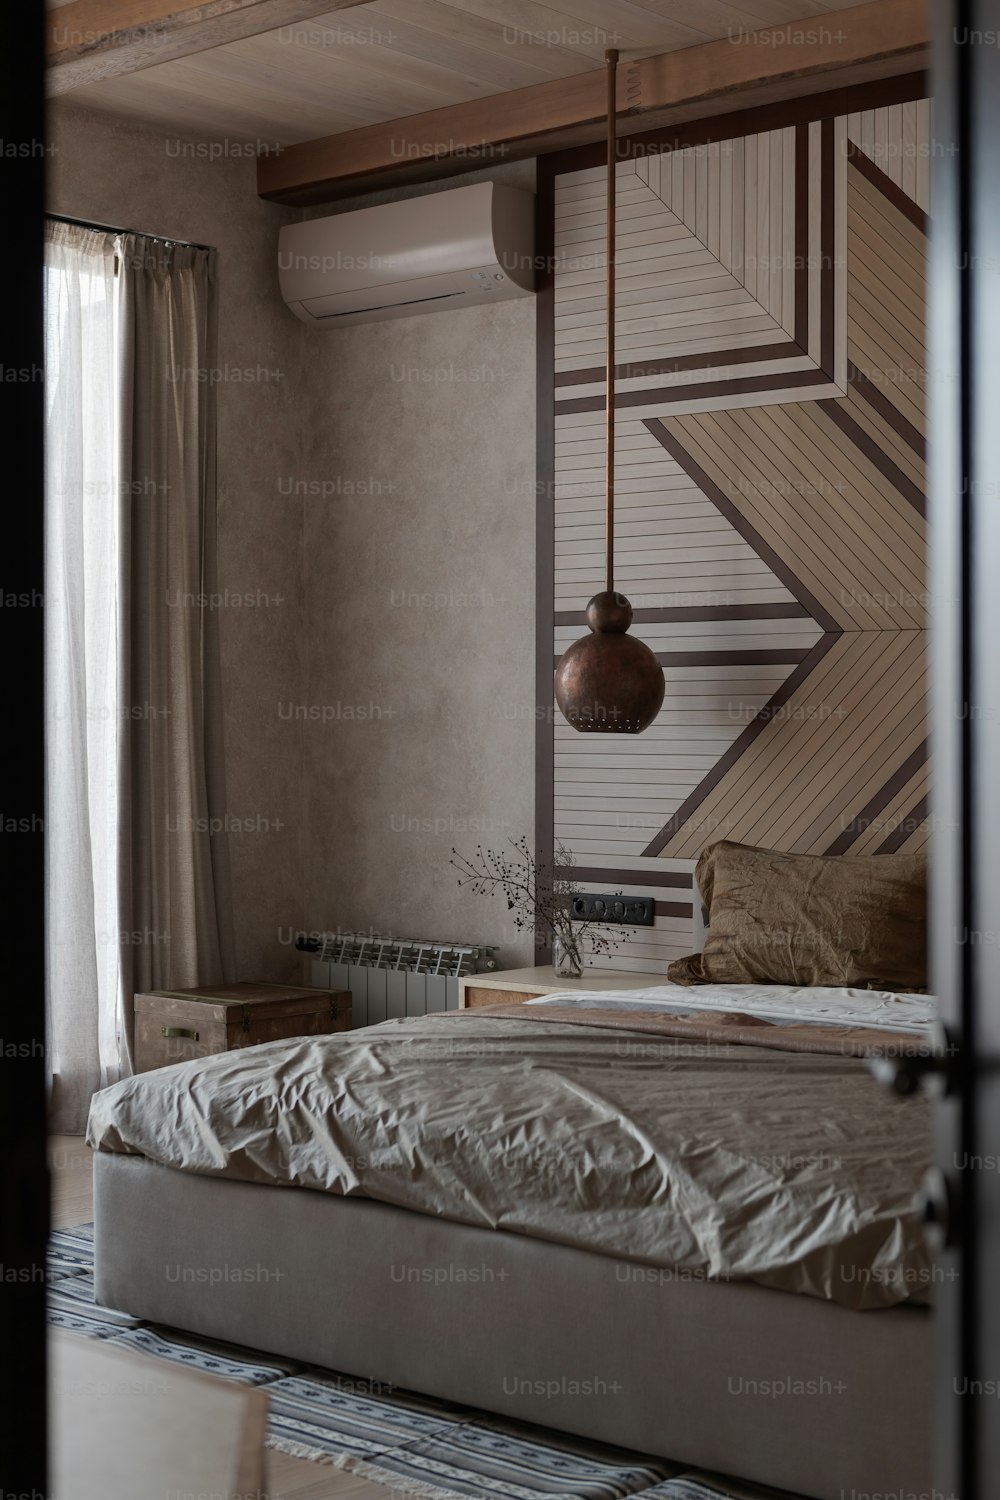 ein Bett in einem Schlafzimmer neben einem Fenster